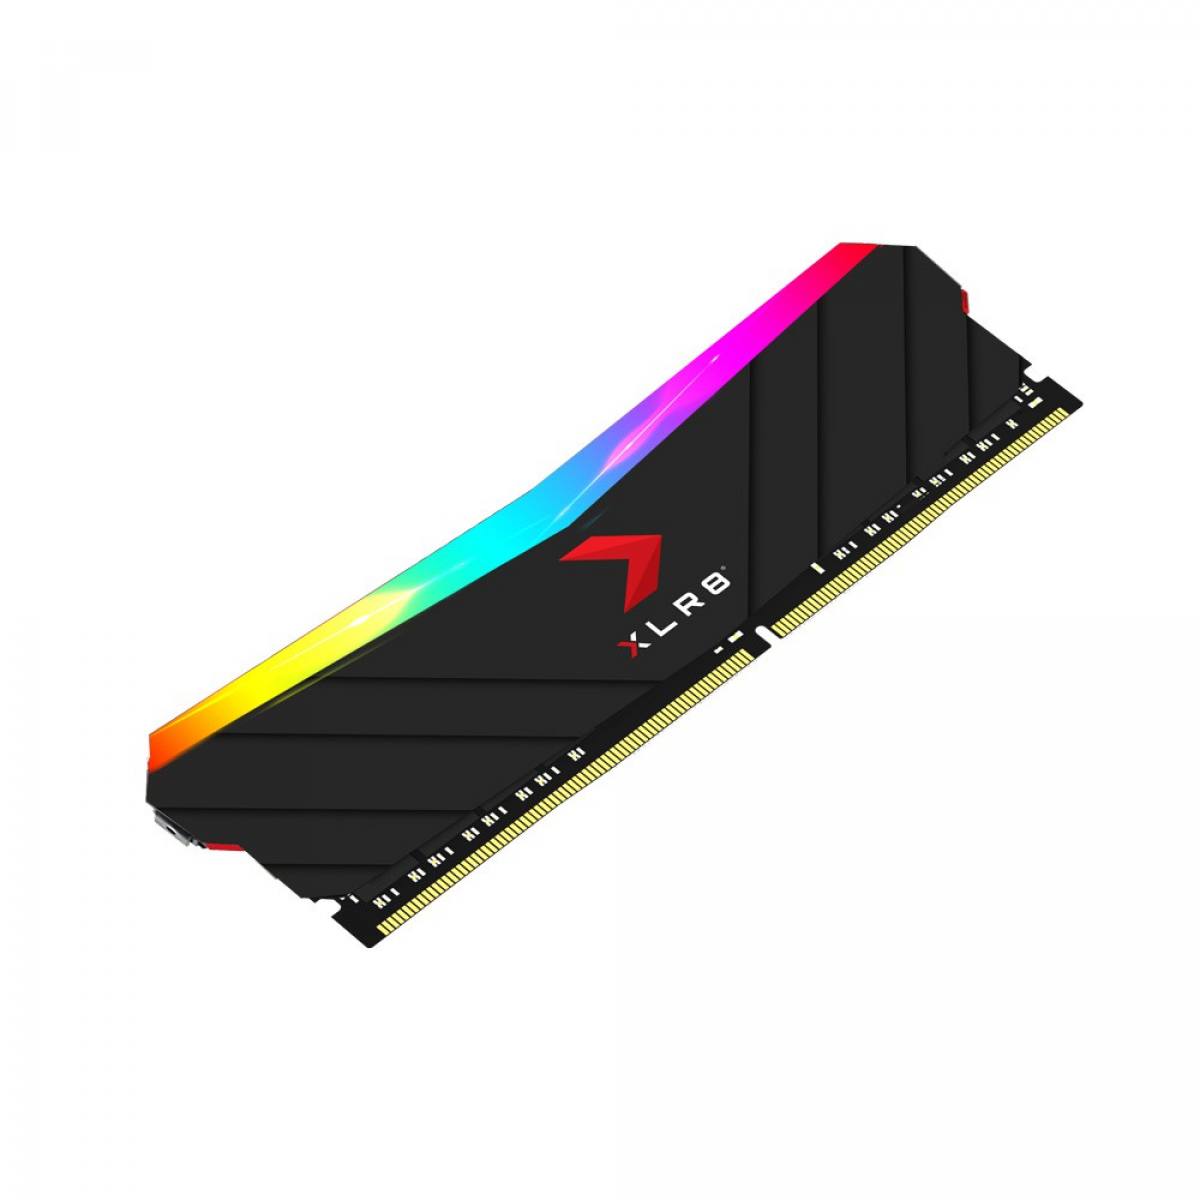 PNY XLR8 16GB DDR4 3200MHz RGB